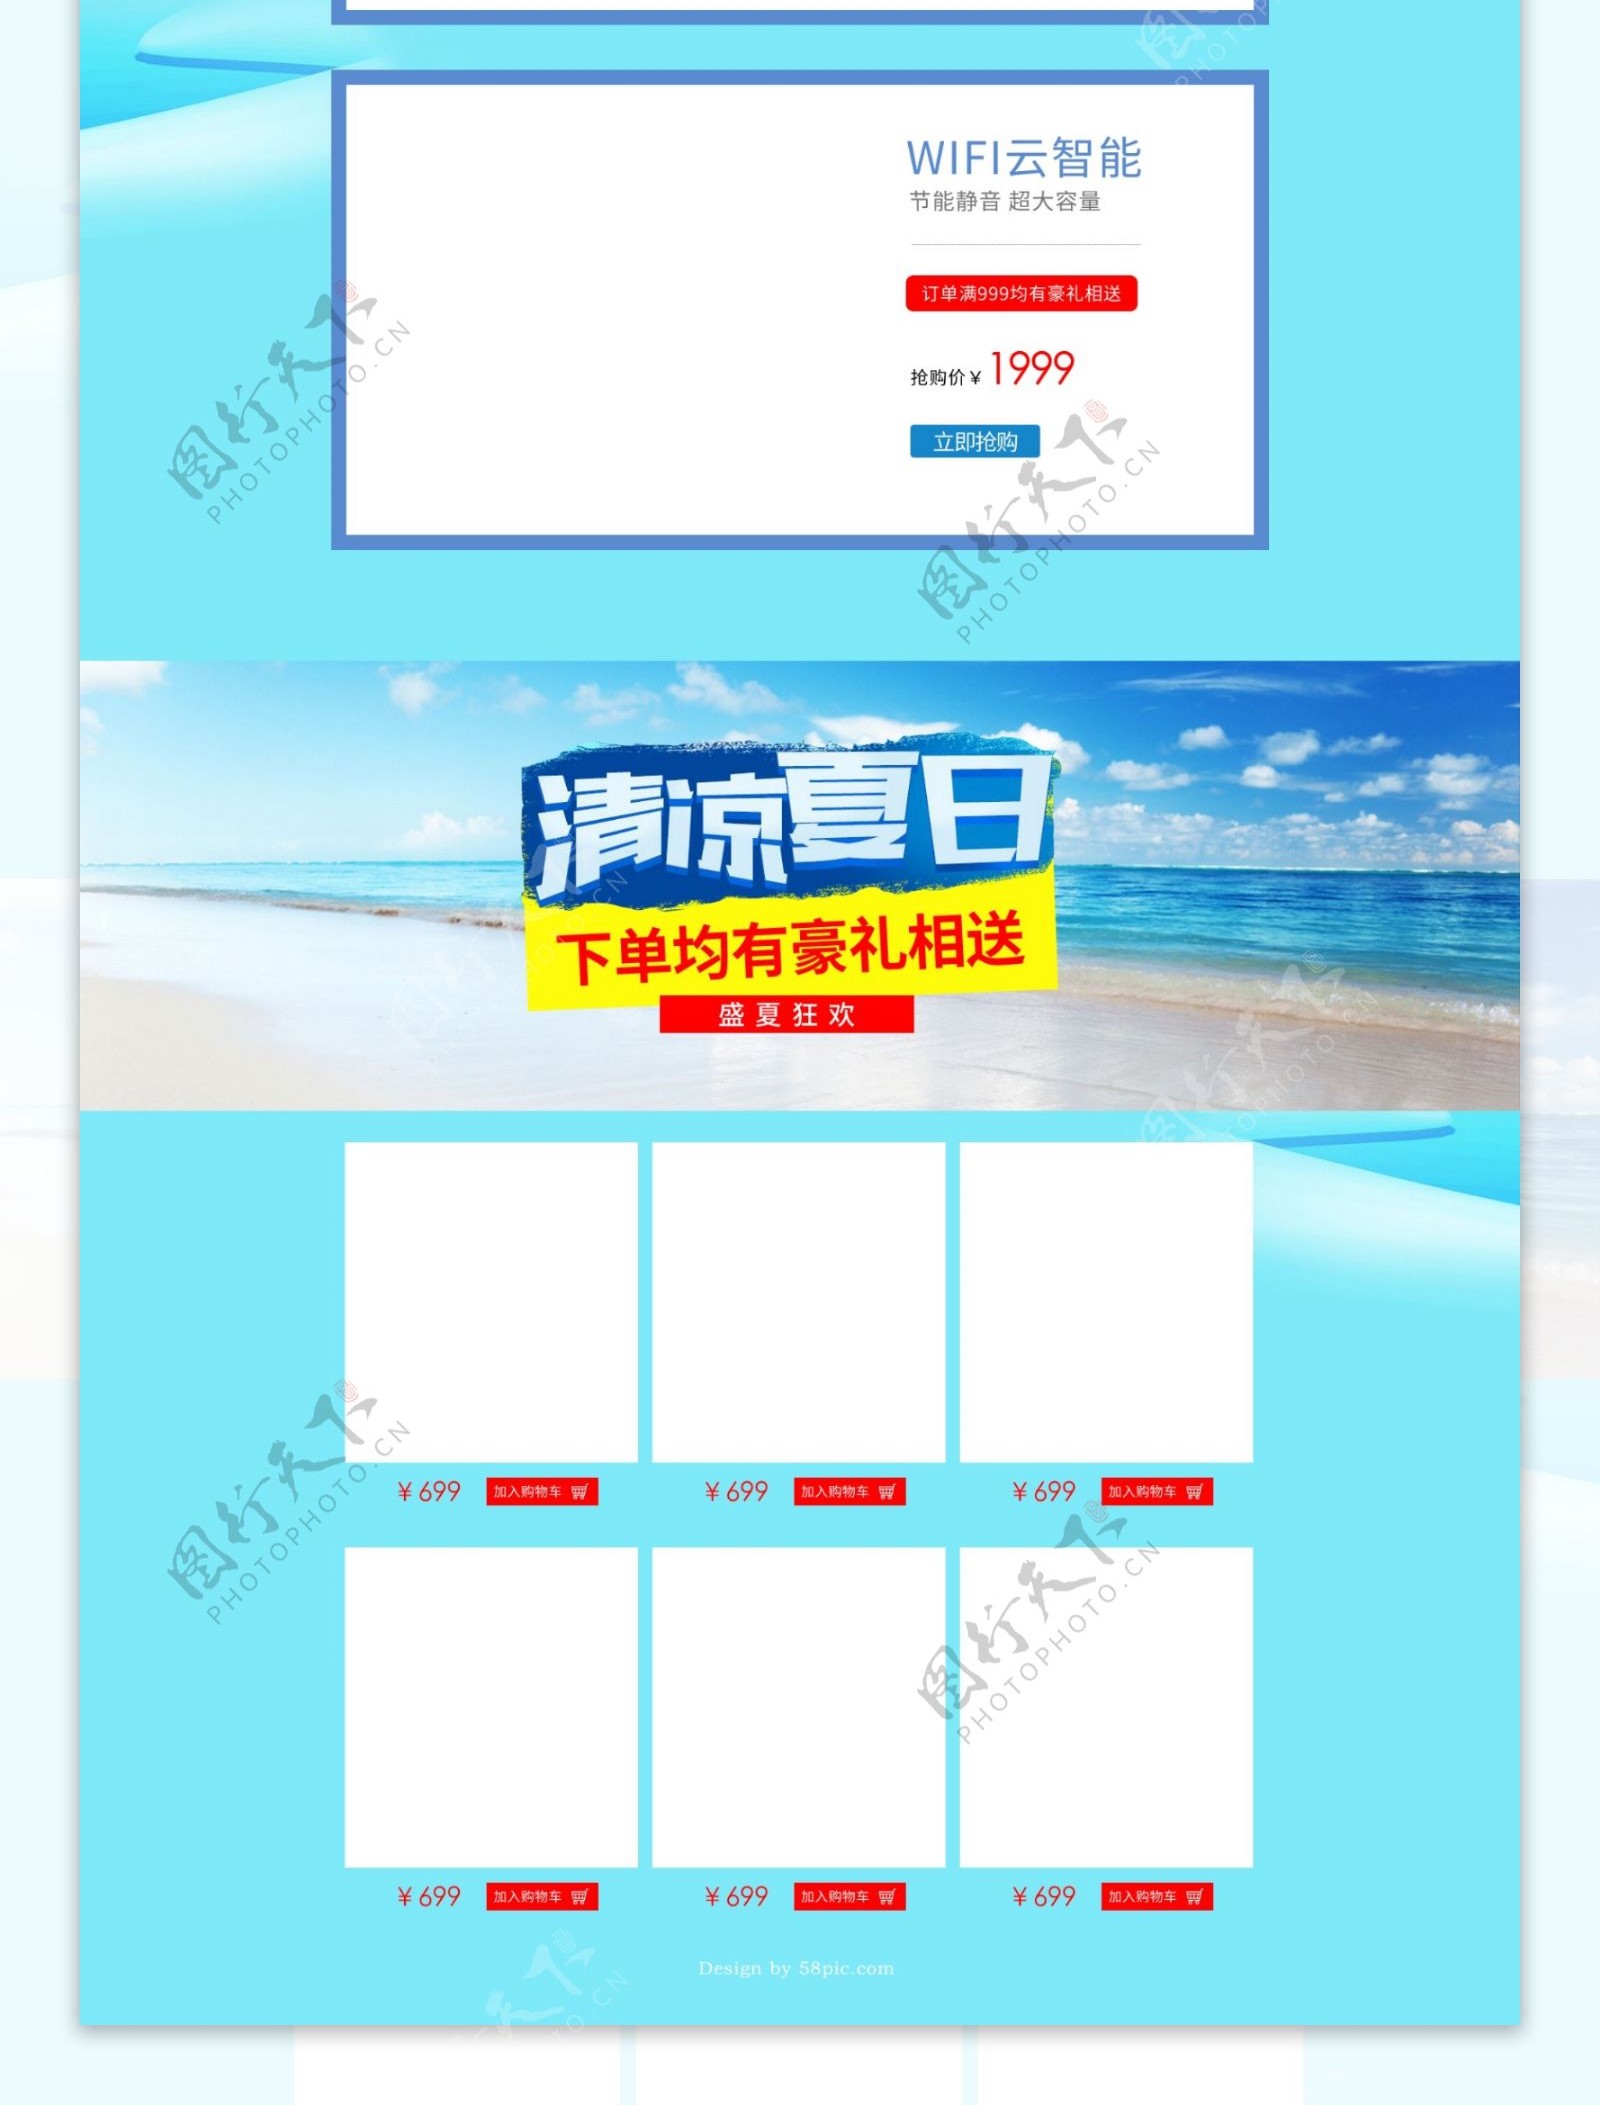 淘宝天猫京东电商夏季数码家电首页海报模板